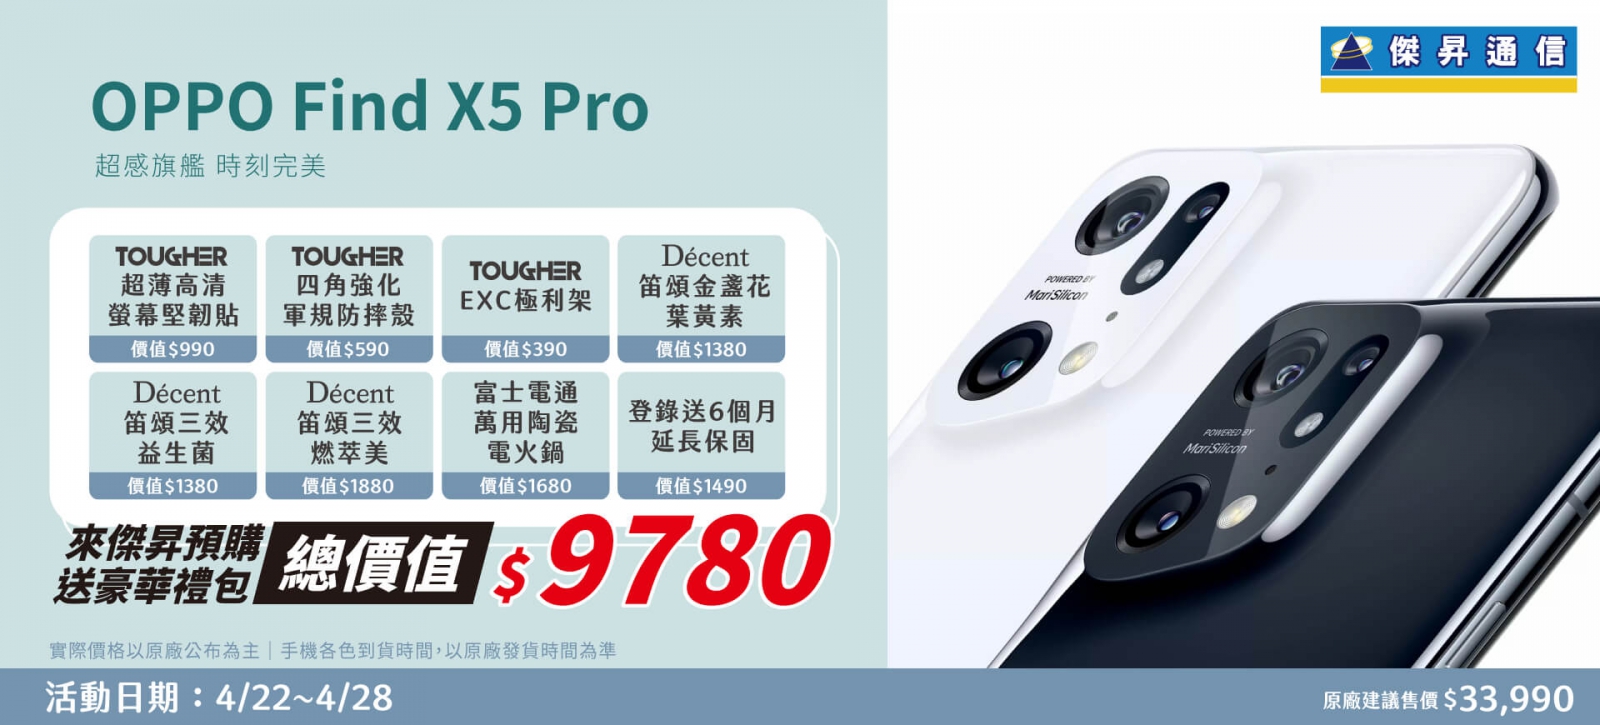 預購OPPO Find X5 Pro 傑昇獨家送近萬元好禮